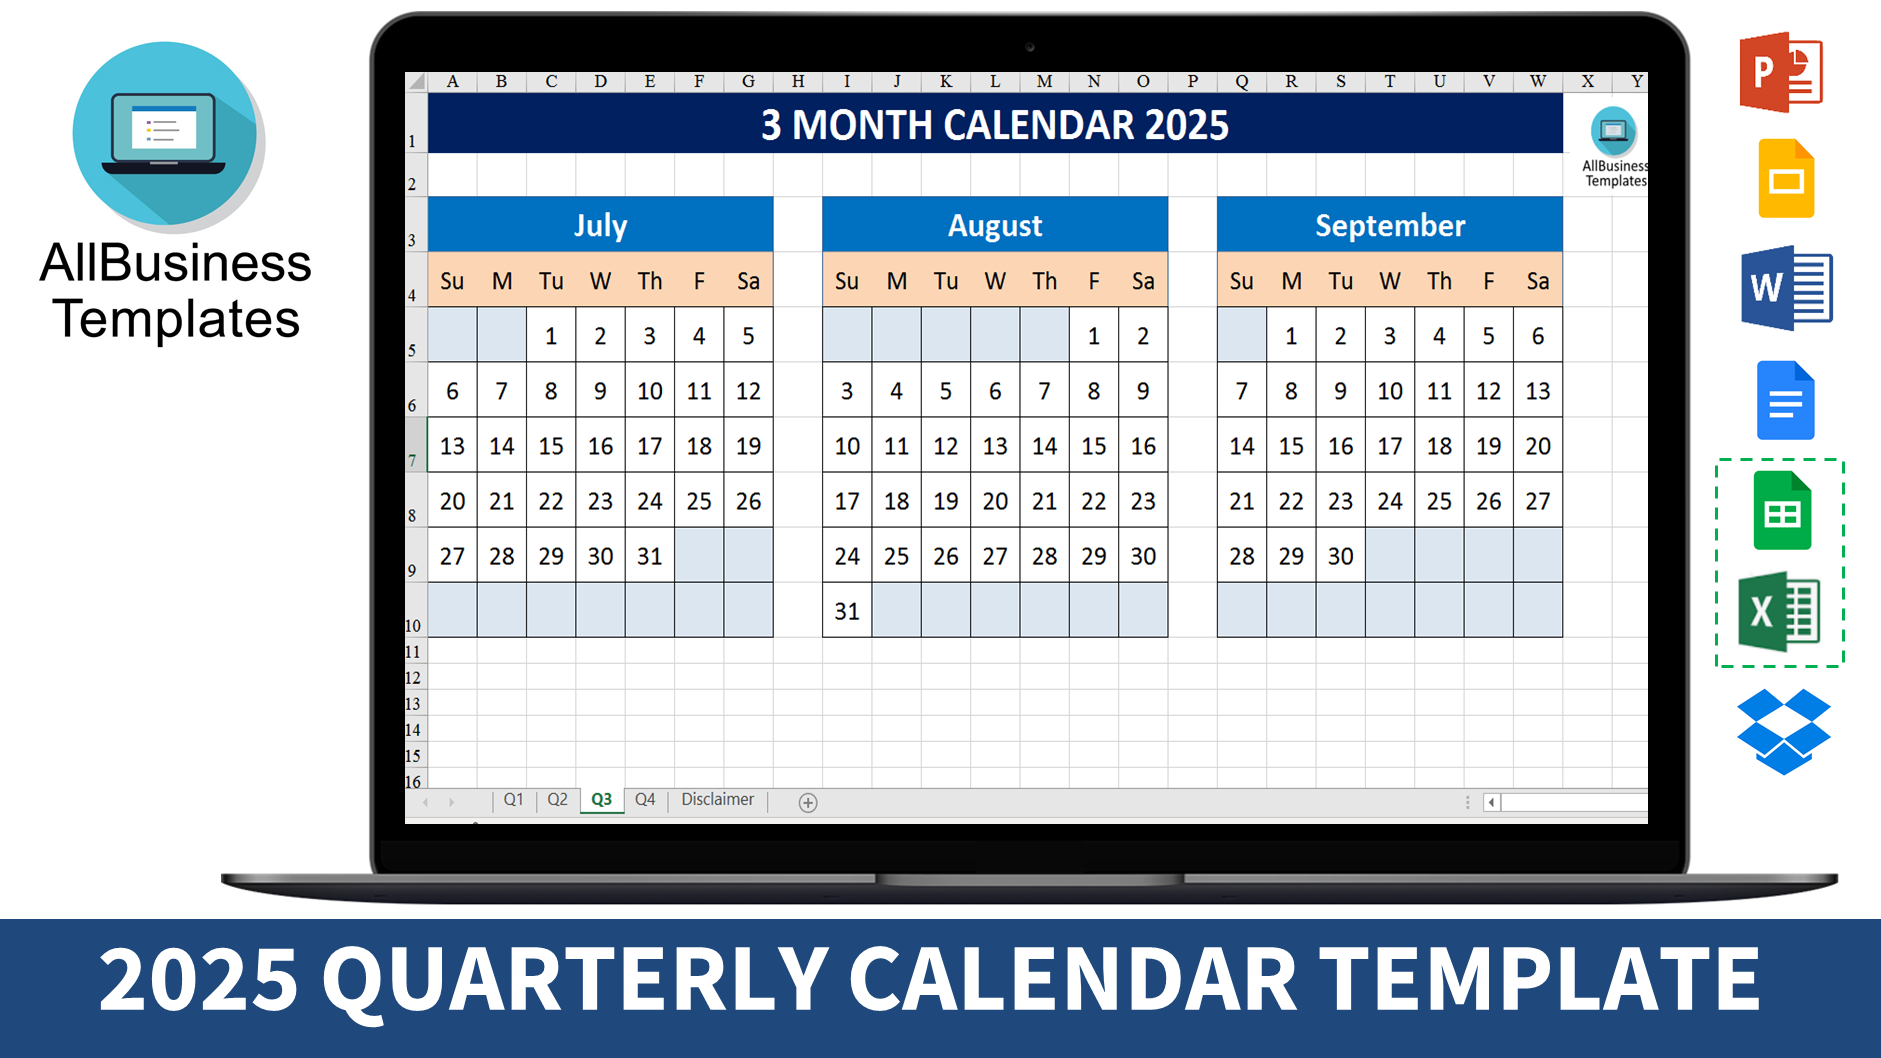 3 month calendar 2025 template